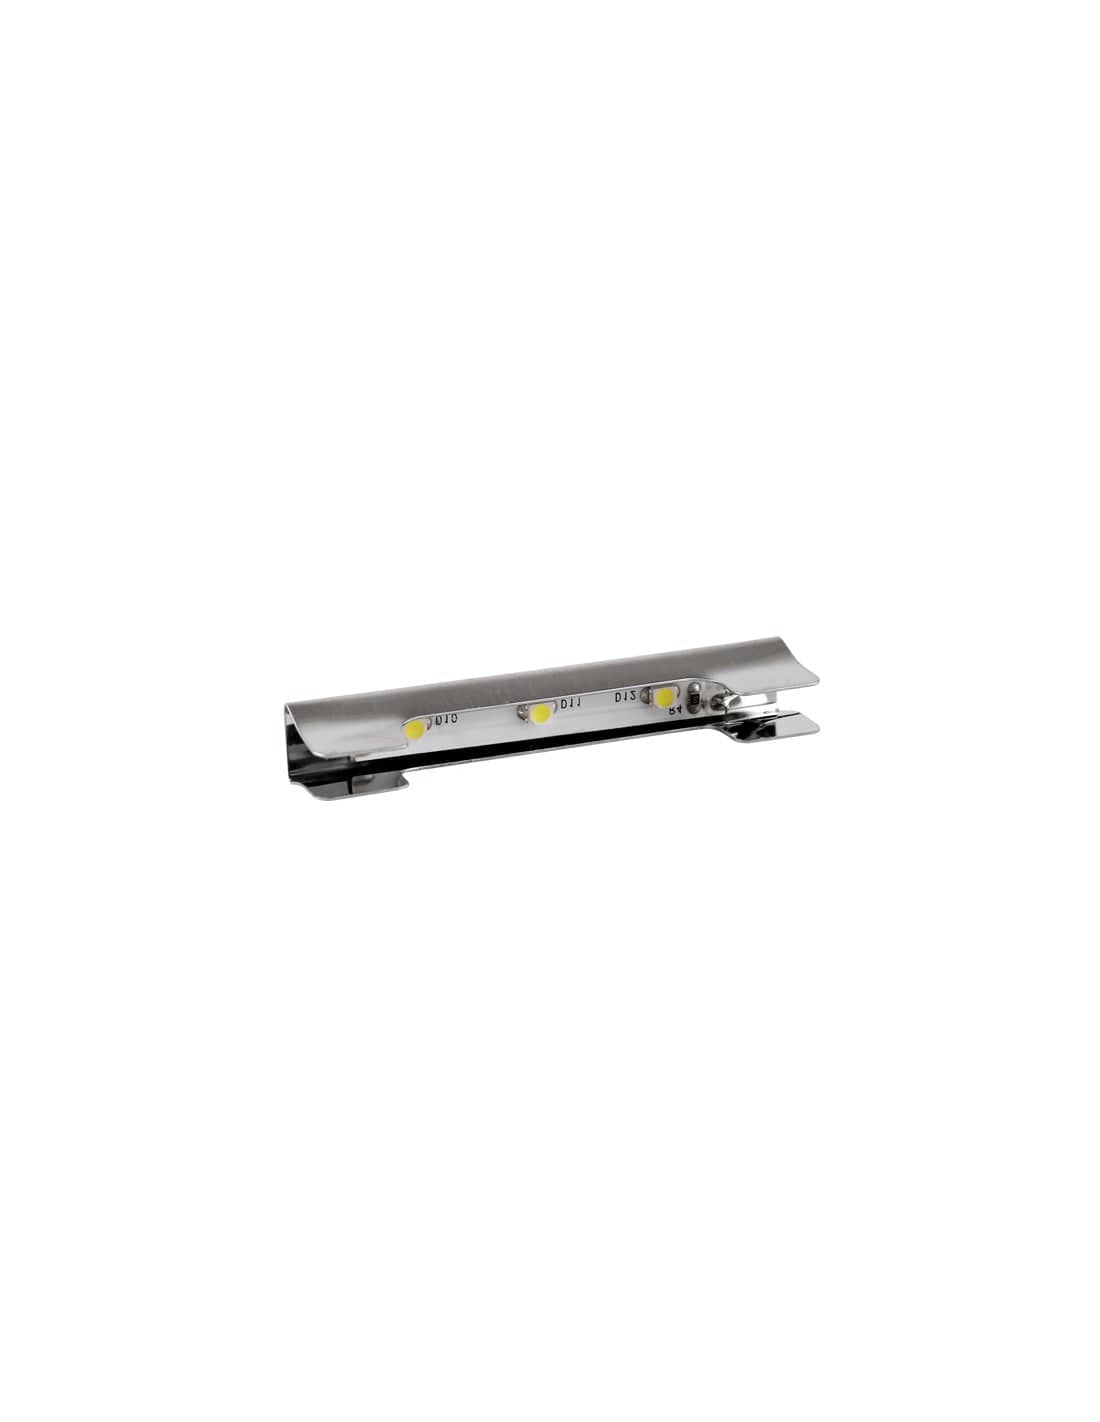 KLIPS - LED metal clip 0.25W Neutral White 40K   KLIPS-M-3528-40K-01